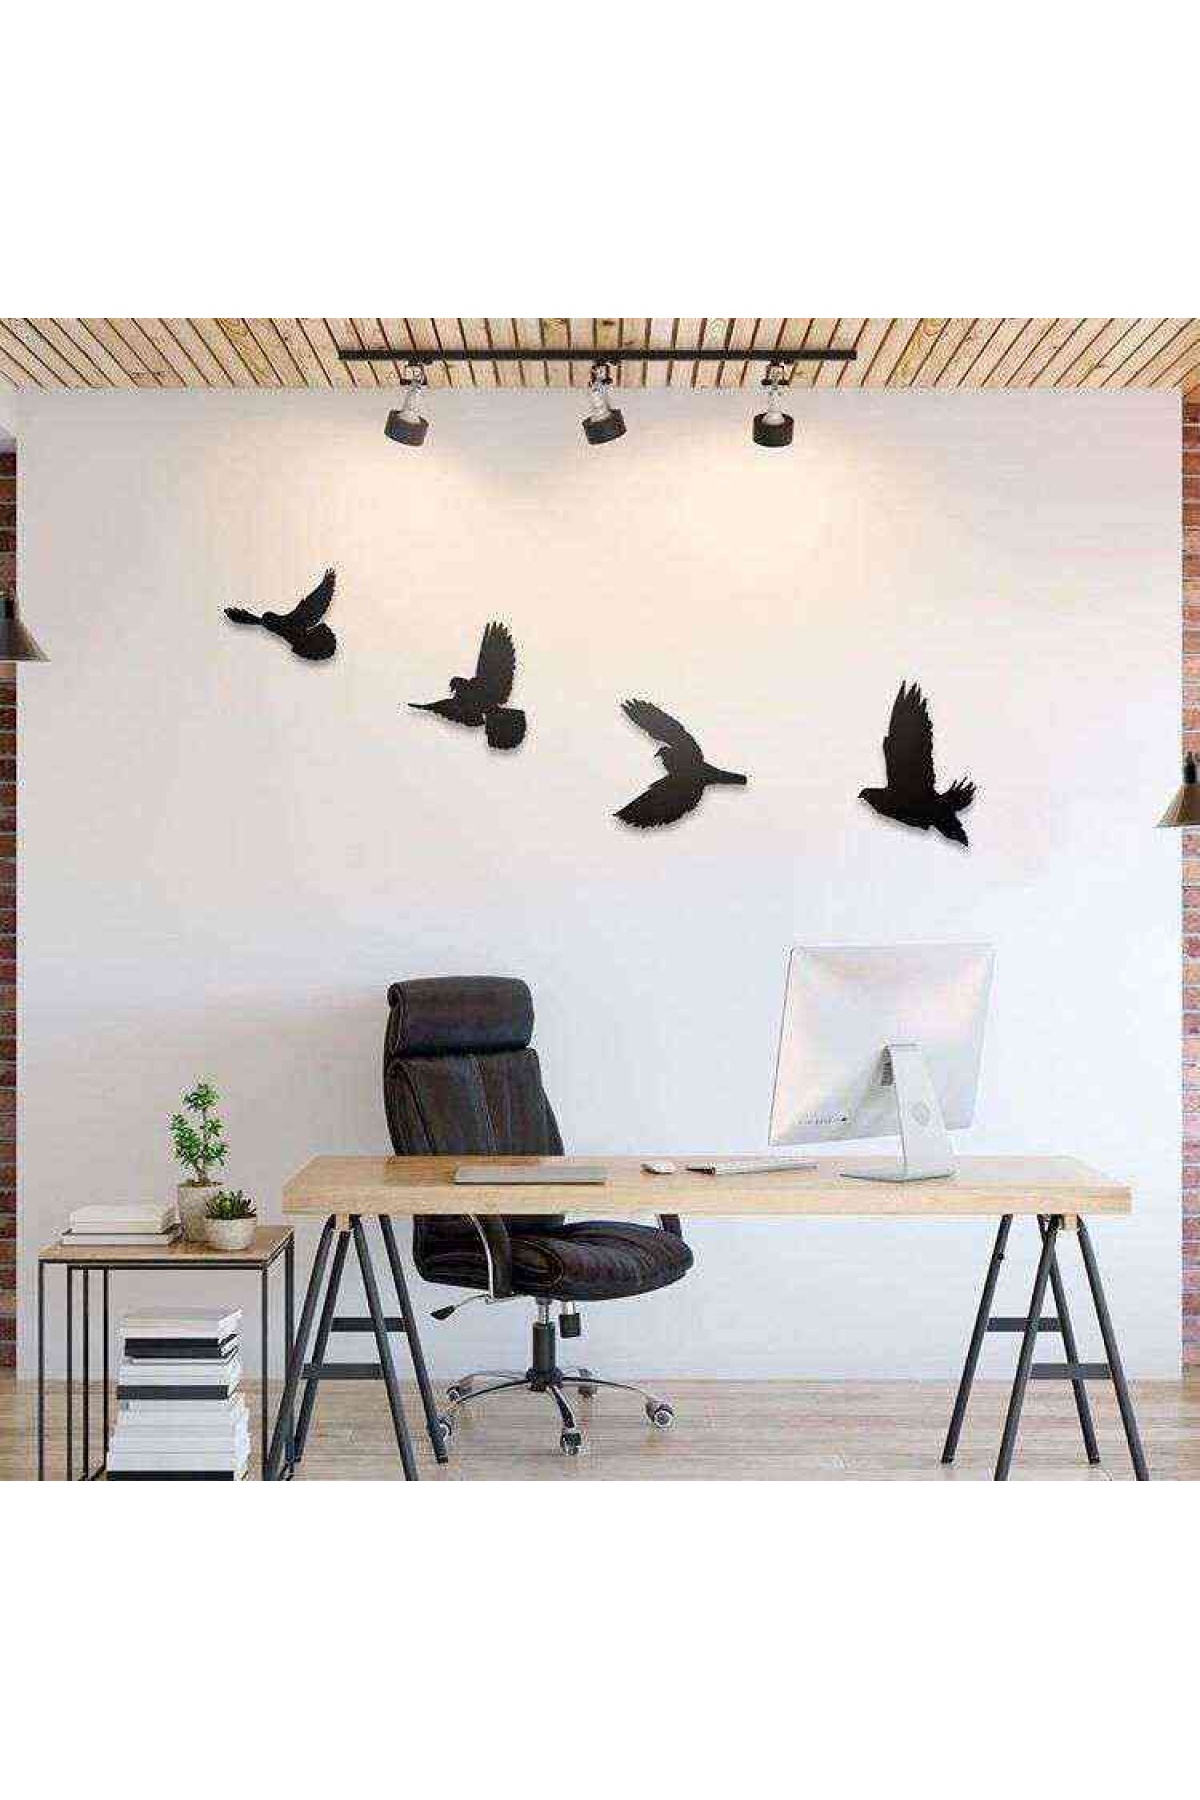 Uçan Kuşlar 3D Mdf Tablo Evinize Ofisinize Yeni Tarz Wall Art